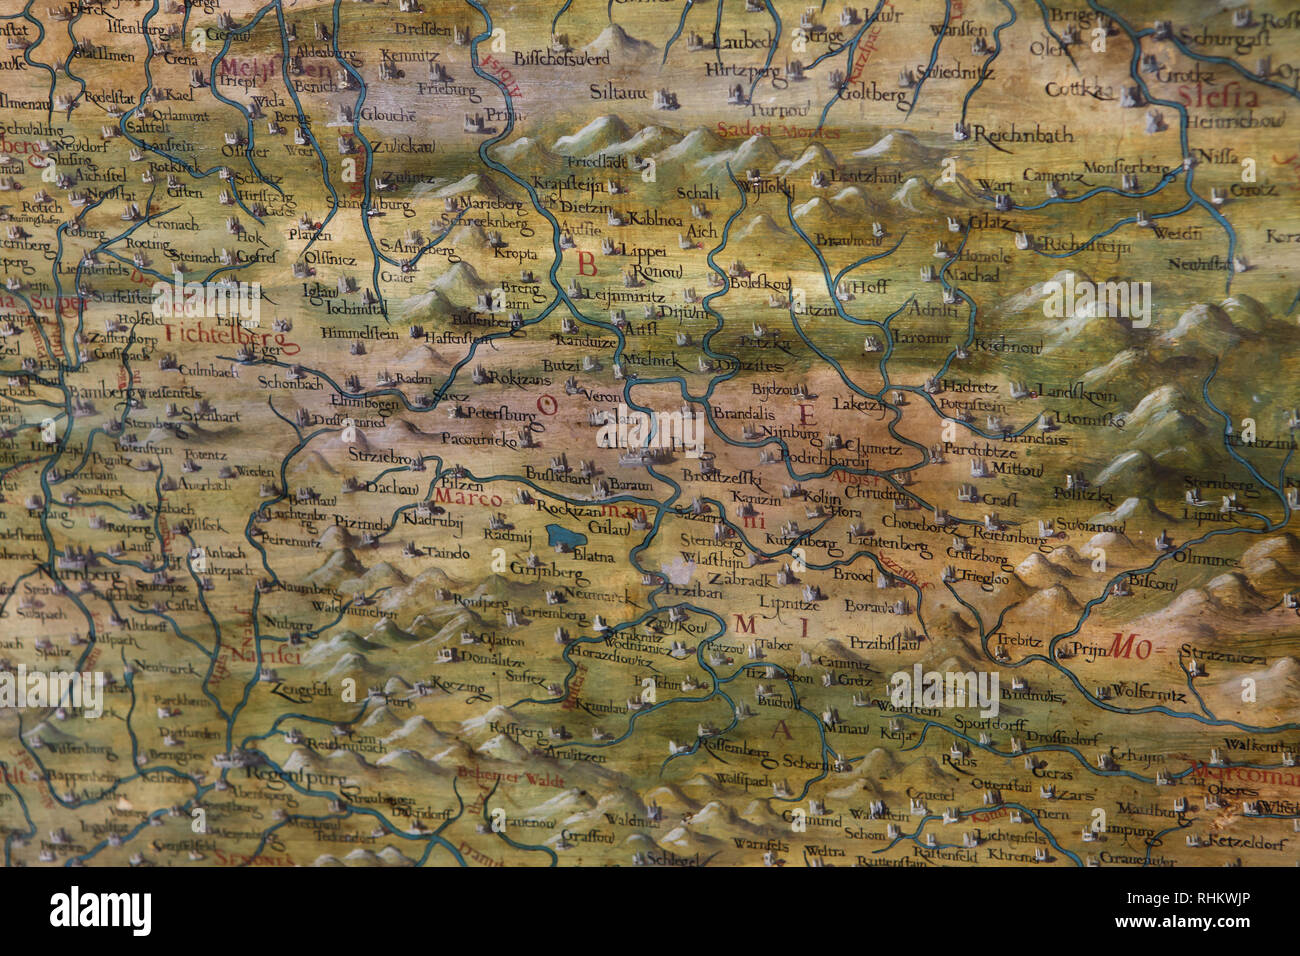 Mapa de Bohemia y Alemania fechadas entre 1564-1586 en la pantalla en la Sala de Mapas geográficos (Sala delle Carte Geografiche) en el Palazzo Vecchio de Florencia, Toscana, Italia. Foto de stock